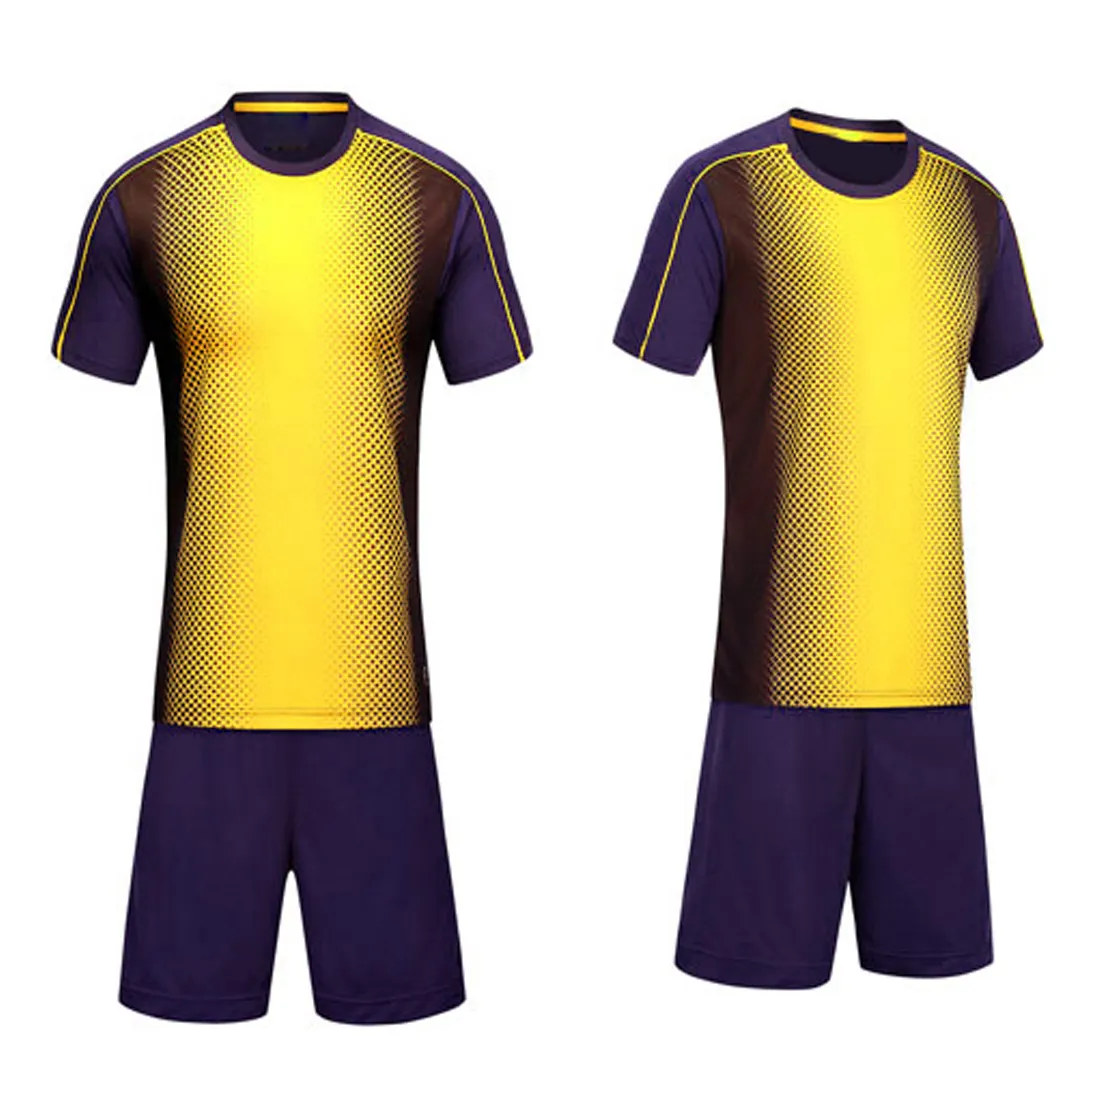 Thiết kế đội bóng của riêng bạn áo bóng đá và quần short đặt nhà máy cung cấp trực tiếp 100% polyester đồng phục bóng đá